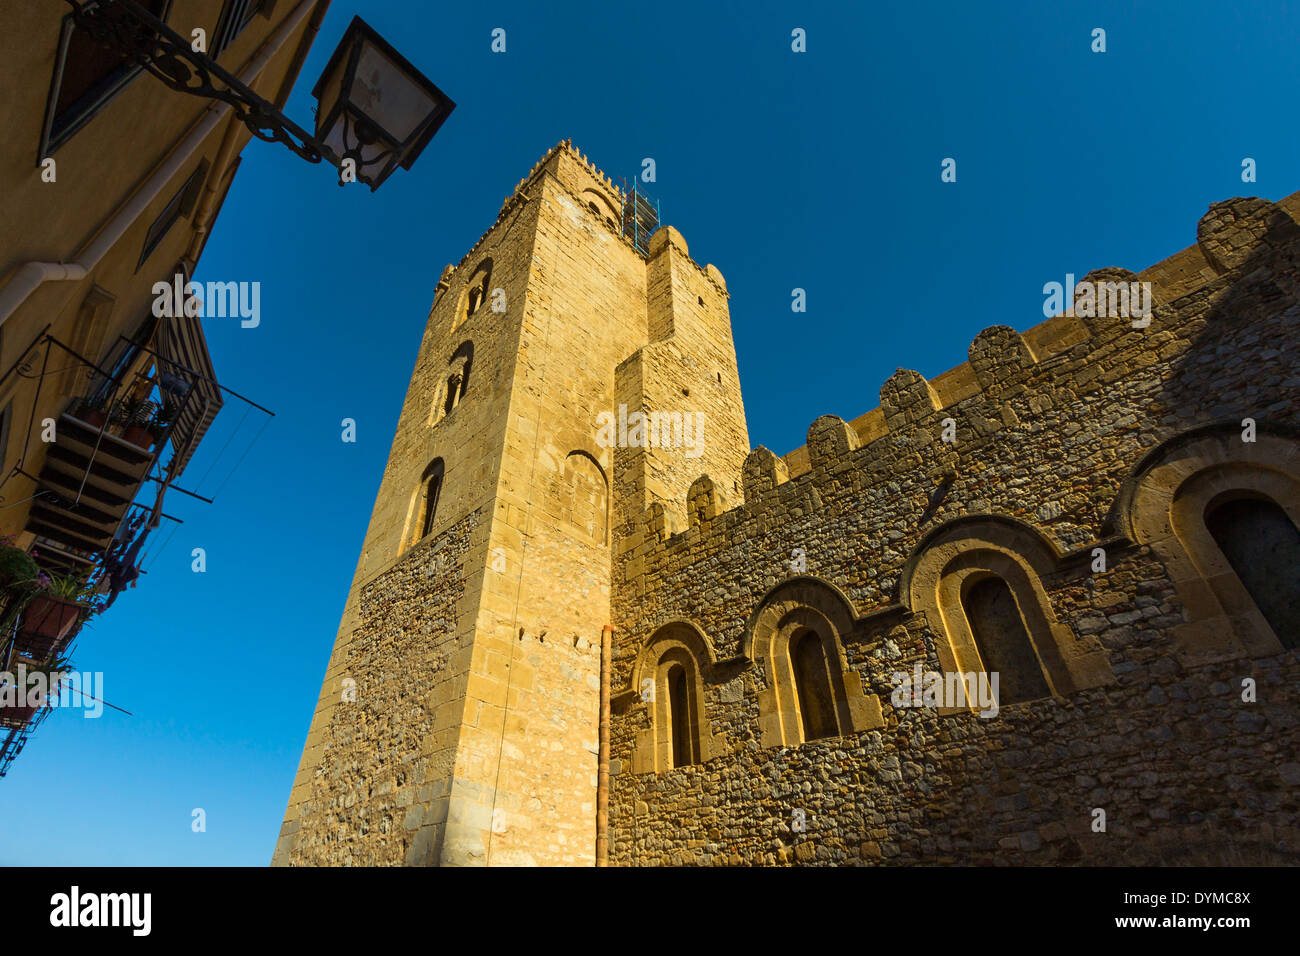 Il Duomo, la cattedrale normanna (1131) in questo molto storico popolare cittadina turistica; Cefalu, provincia di Palermo, Sicilia, Italia Foto Stock